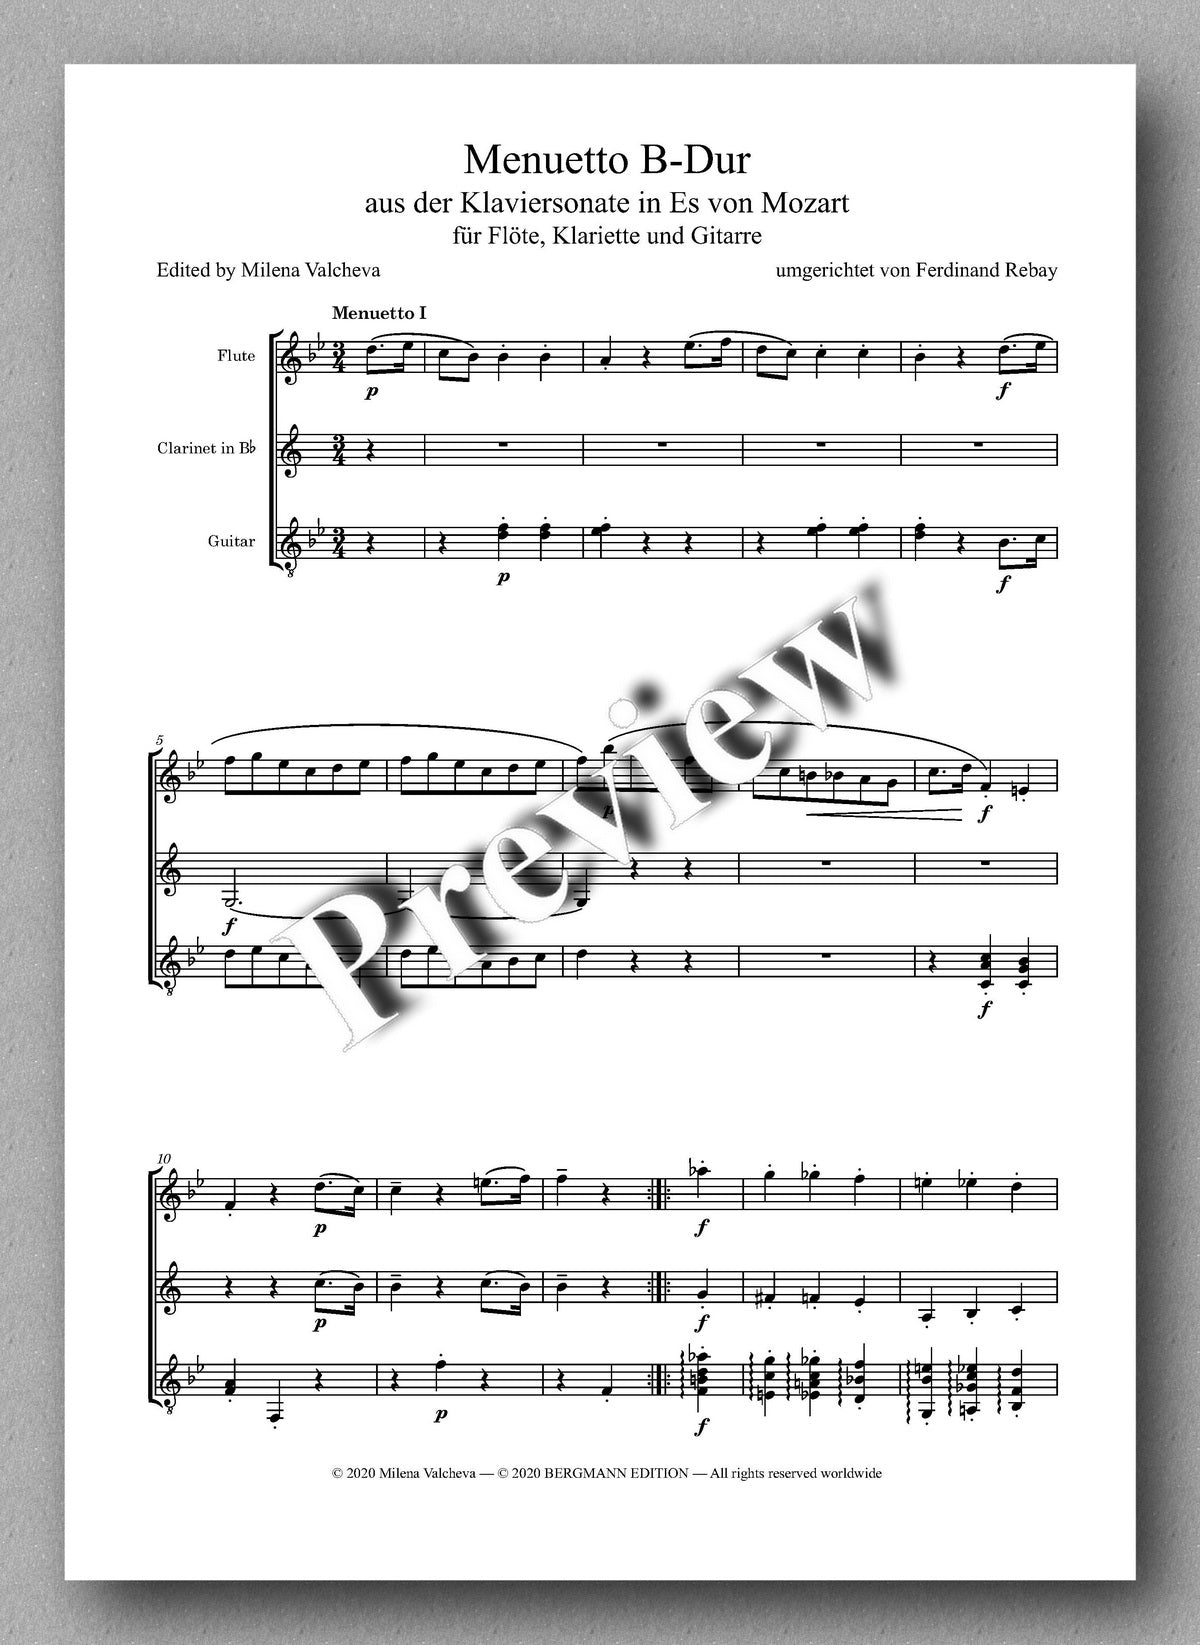 Rebay [161], Menuetto B-Dur aus der Klaviersonate in Es von Mozart - music score 1